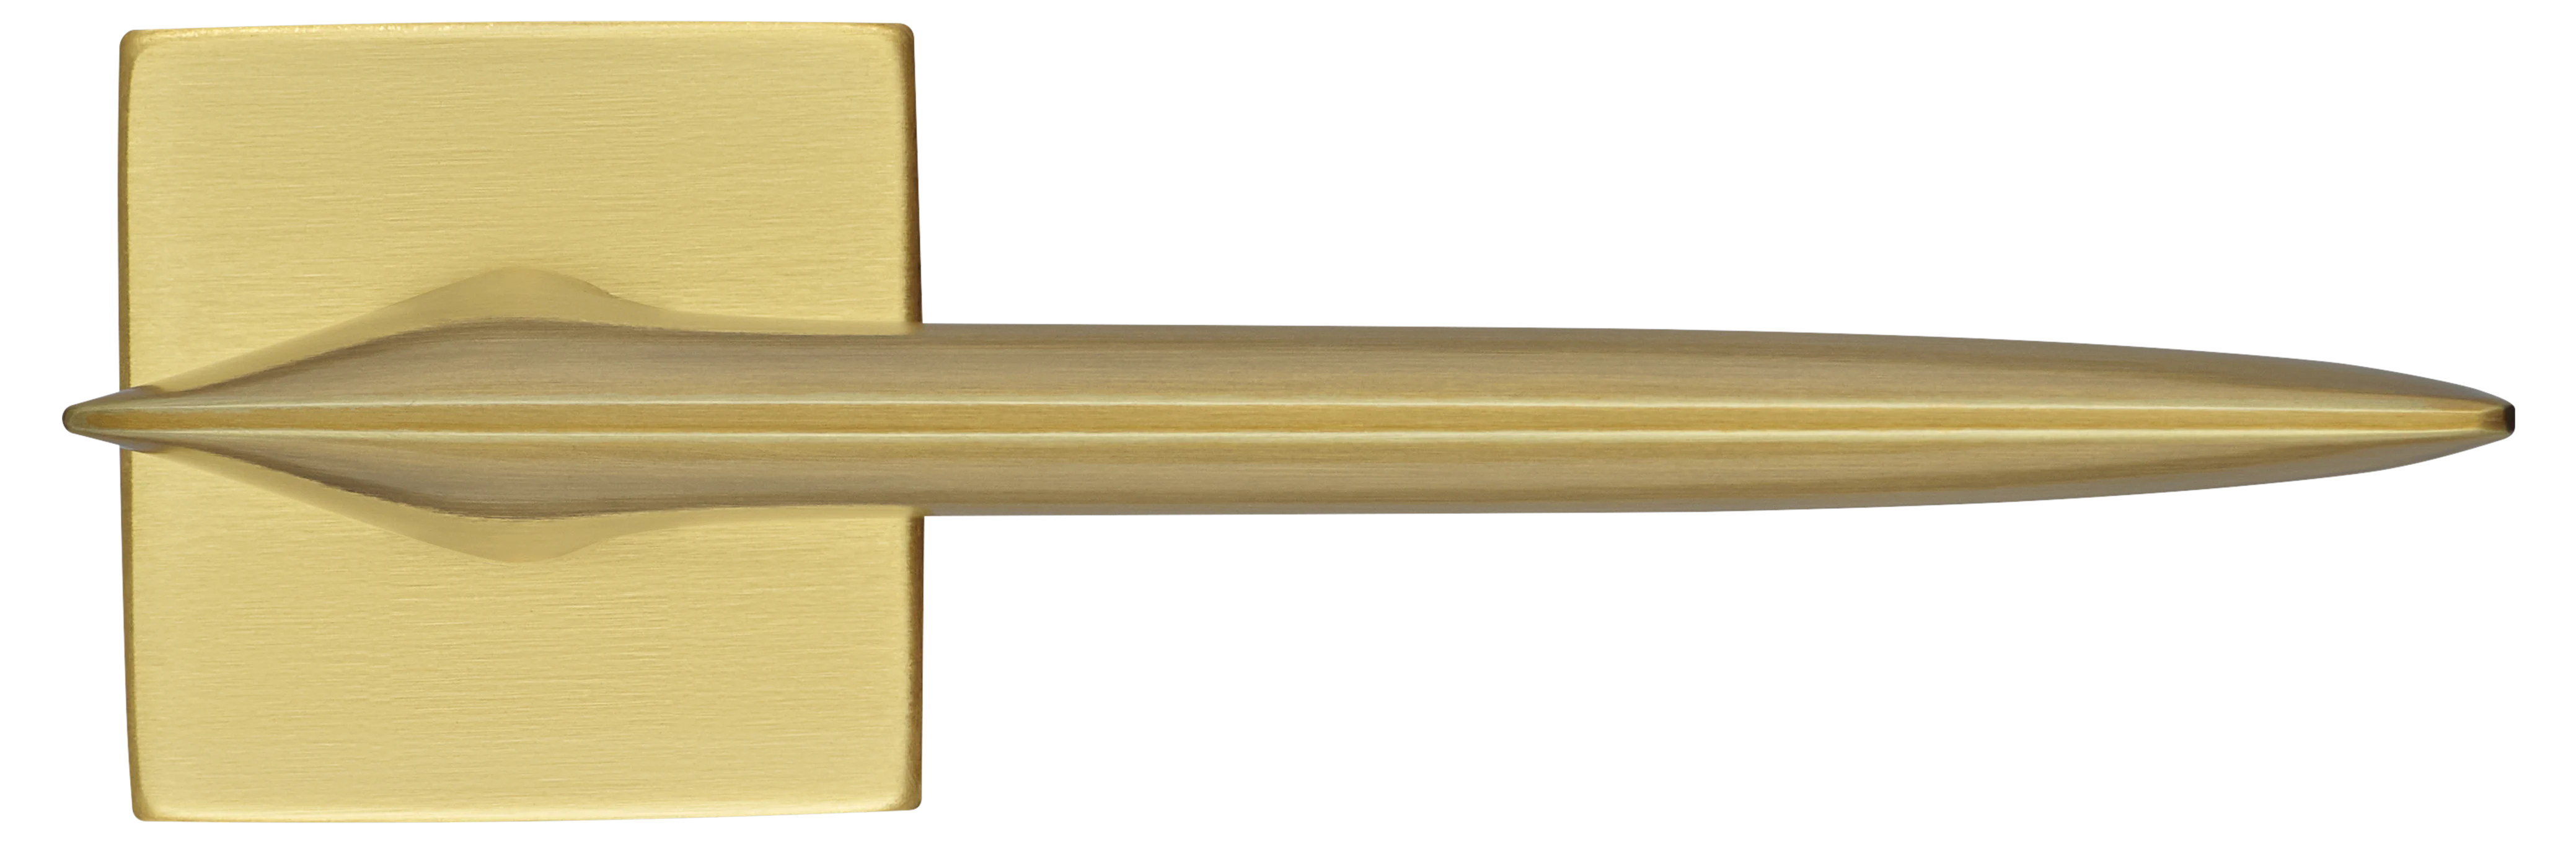 GALACTIC S5 OSA, ручка дверная, цвет -  матовое золото фото купить в Липецке